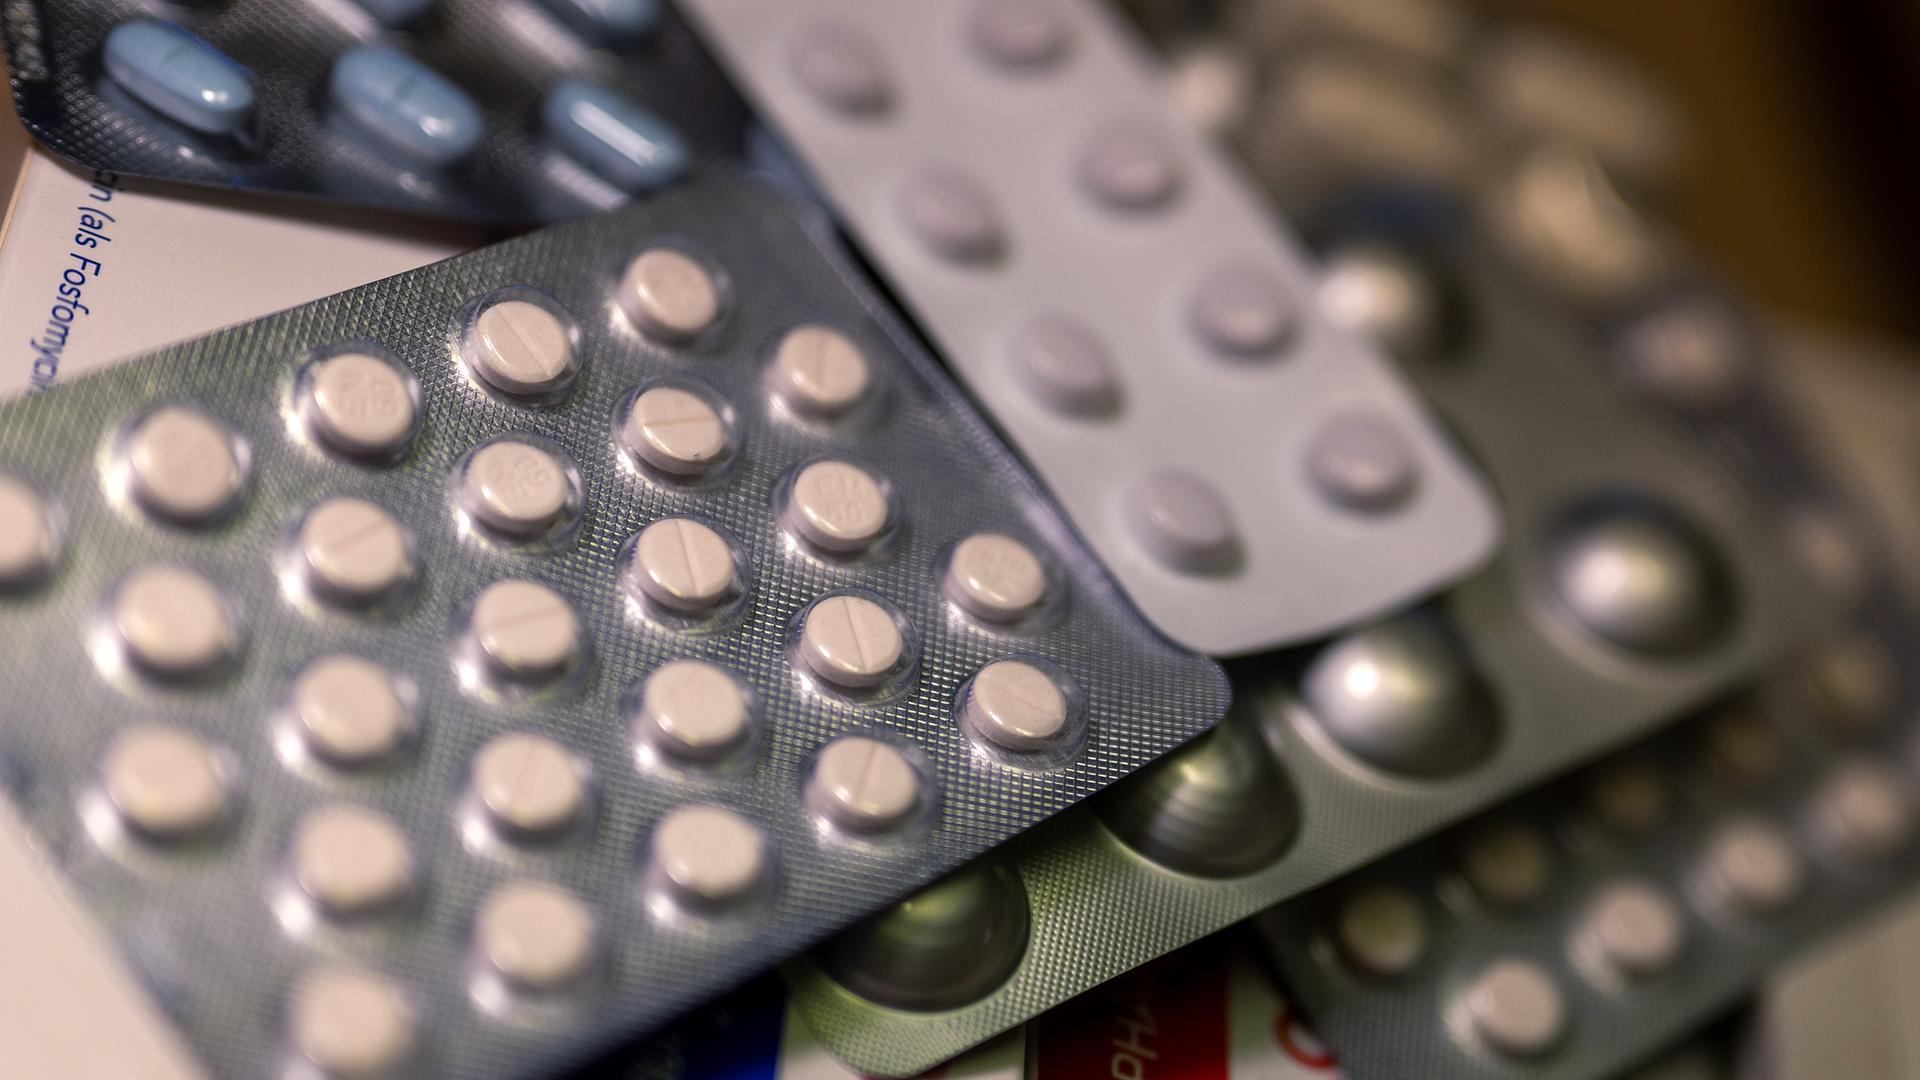 Das Bild zeigt mehrere Blisterpackungen mit Tabletten.